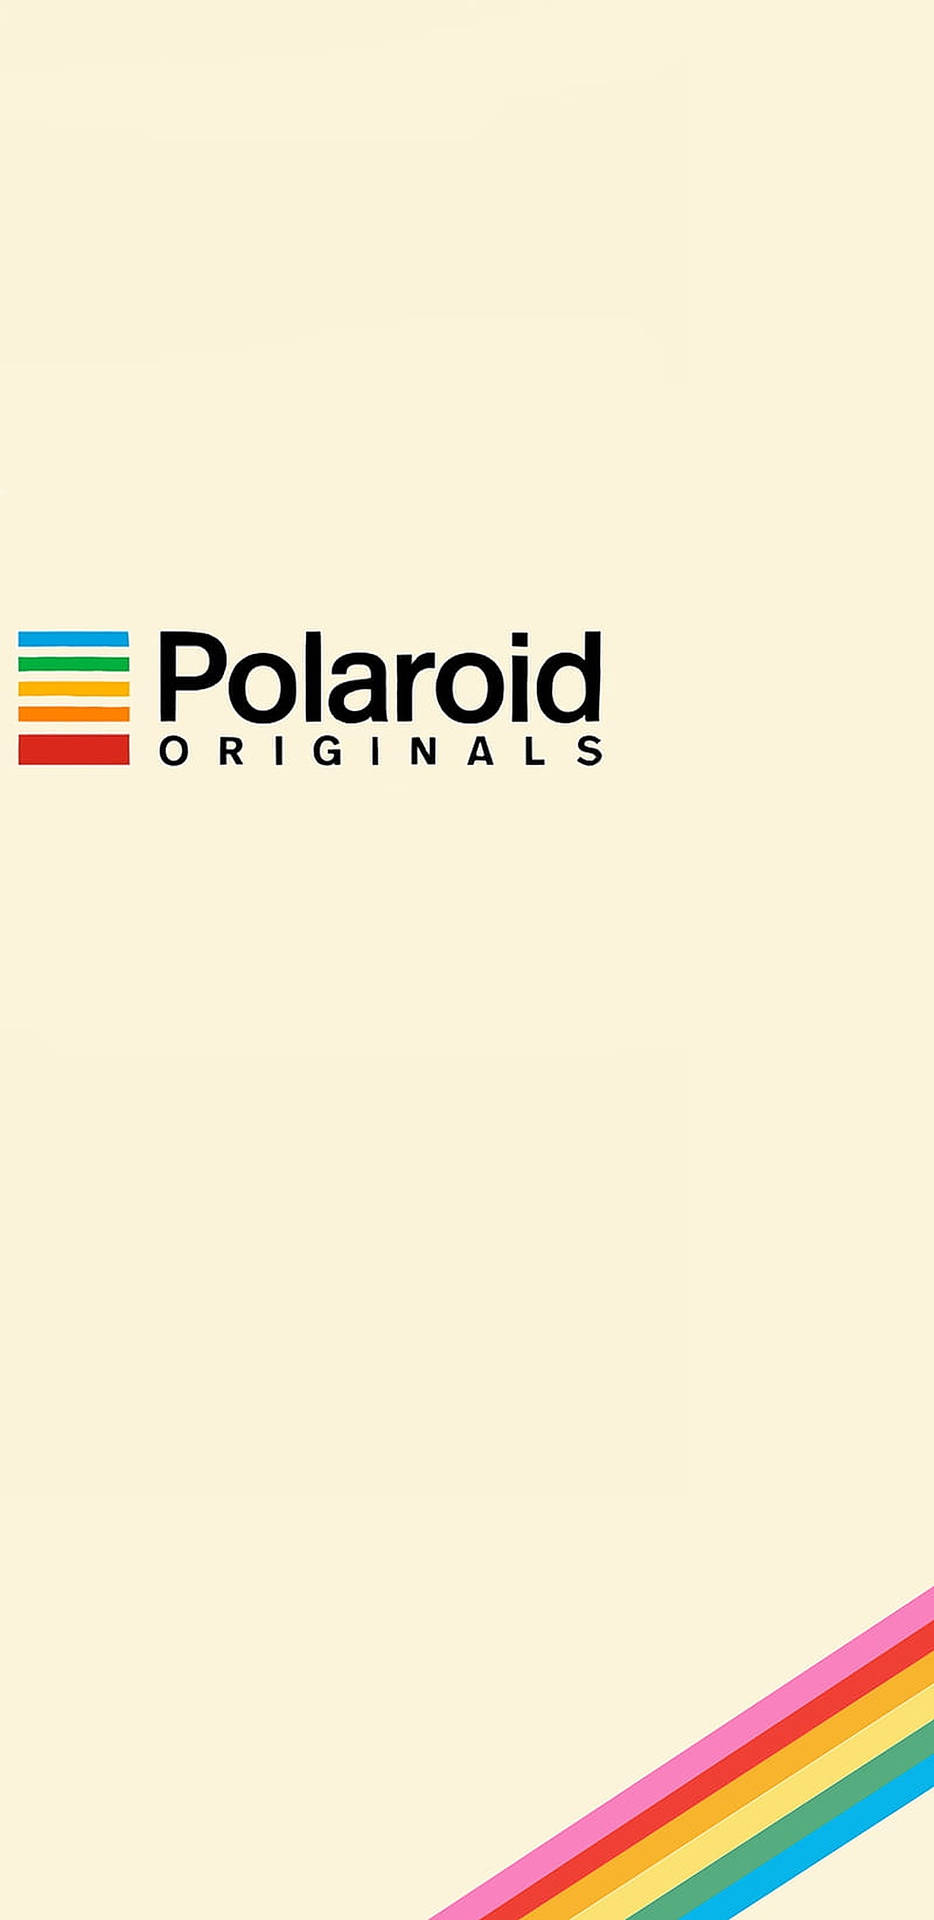 Polaroid Originals Background